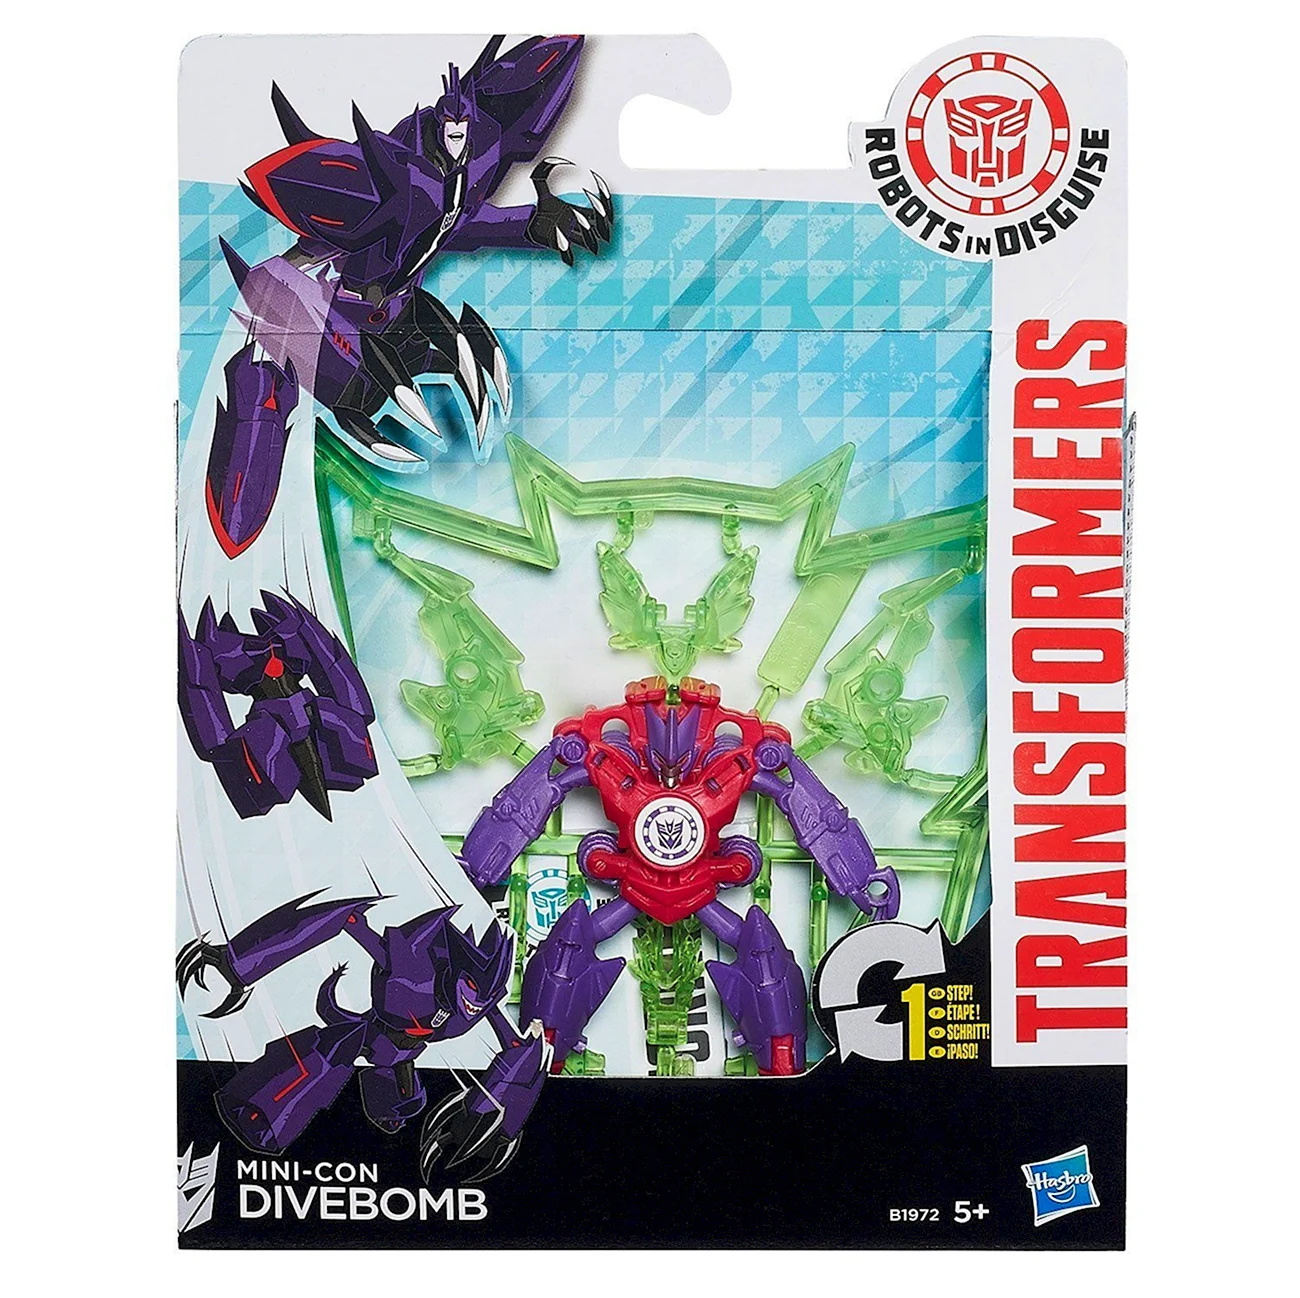 Hasbro Transformers b0763 трансформеры роботс-ин-Дисгайз Миниконс. Картинка из мультфильма